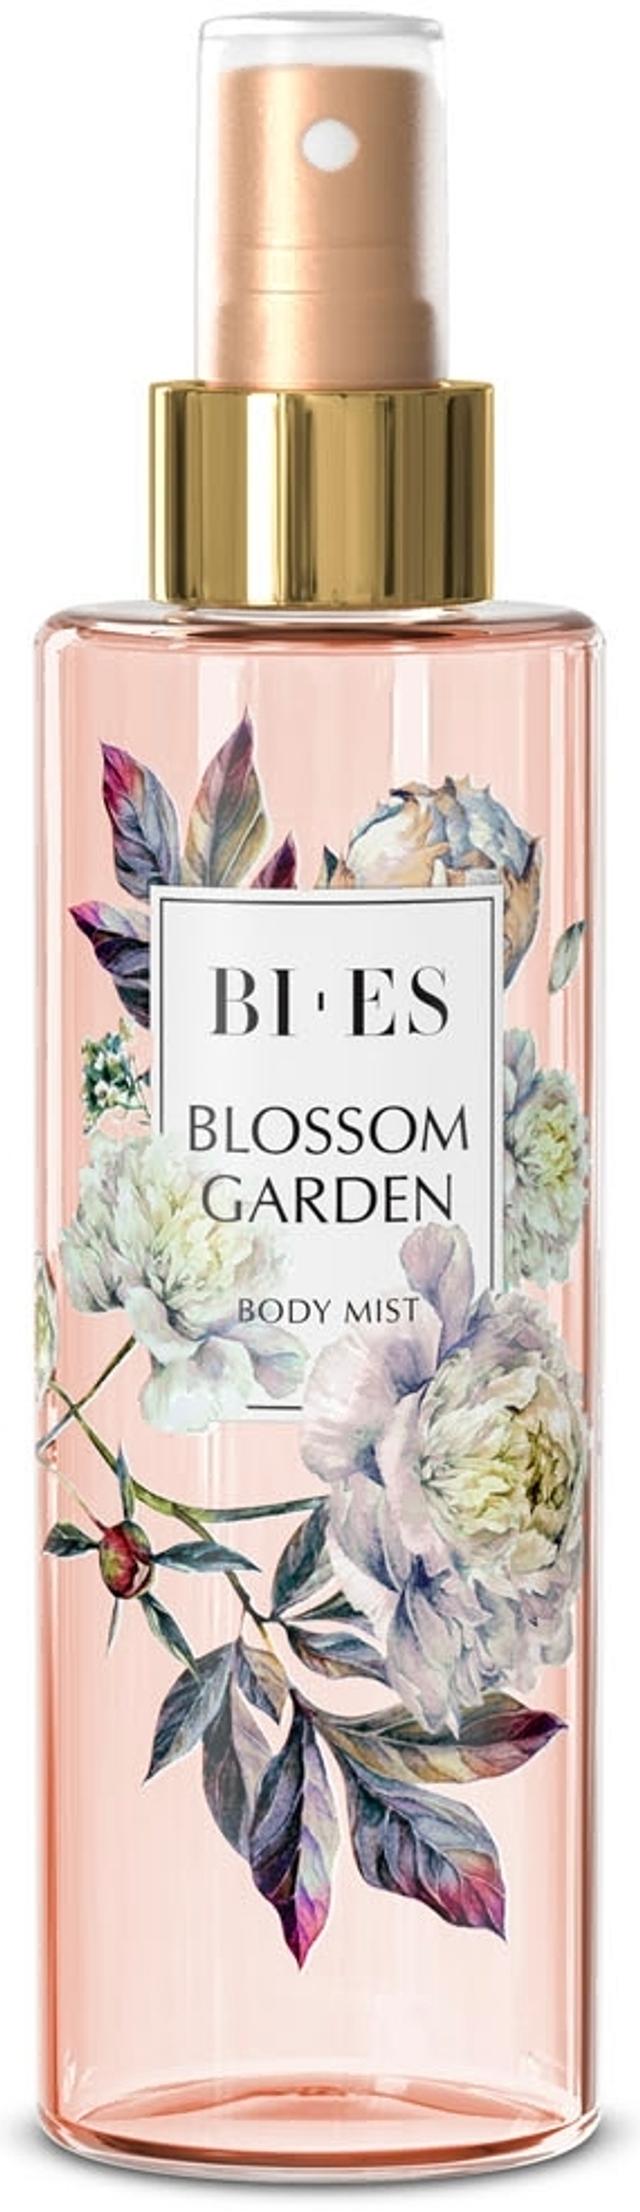 BI-ES Blossom Garden Body Mist 200ml